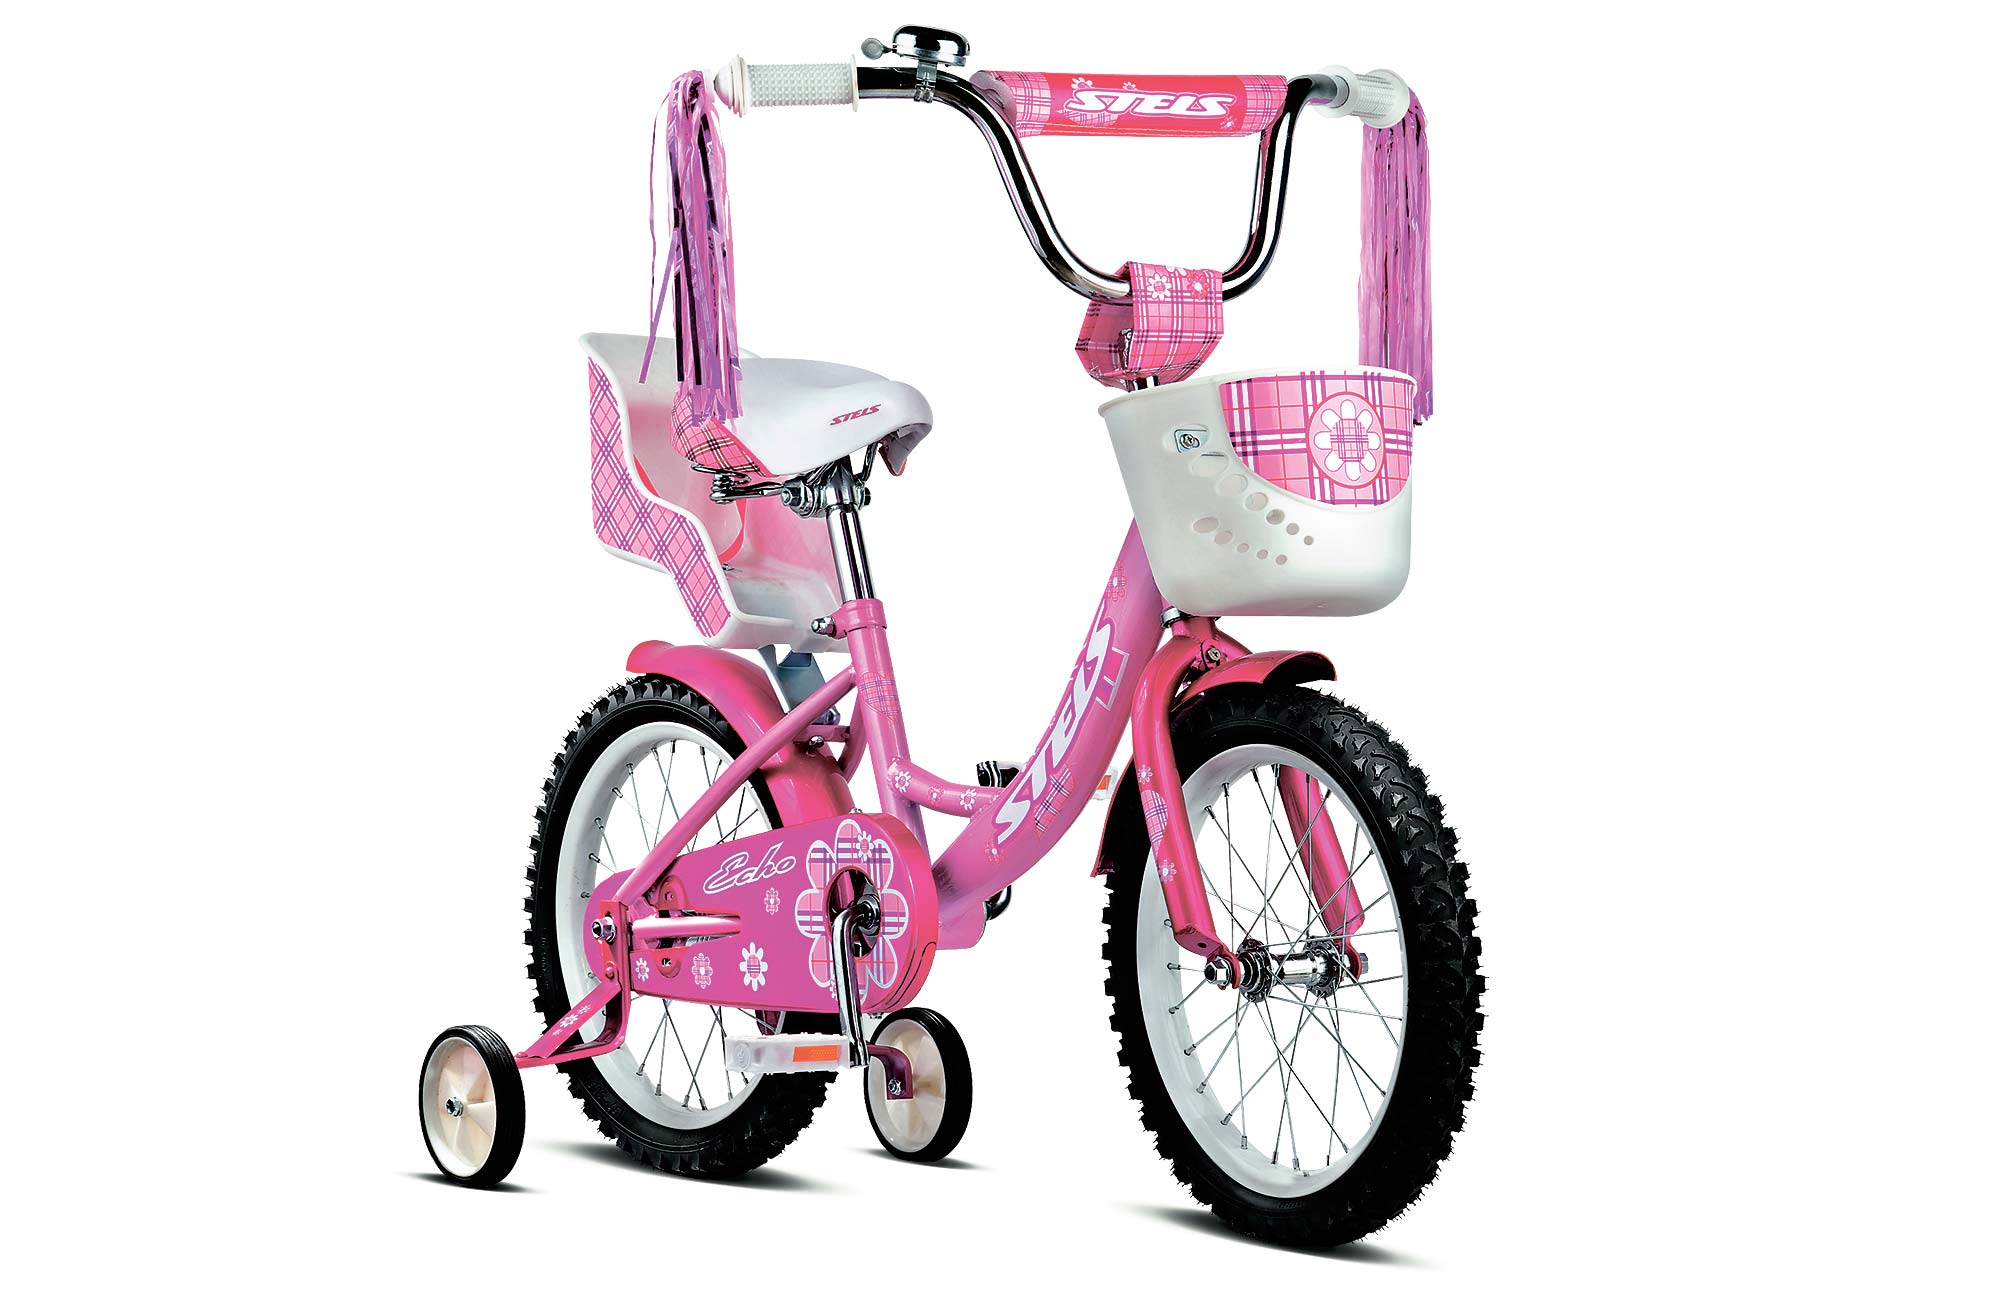 Купить детский велосипед для девочки авито. Детский велосипед stels Echo 16. Детский велосипед stels Echo 12. Велосипед stels Echo 12" v020. Велосипед стелс для девочки 4 лет.